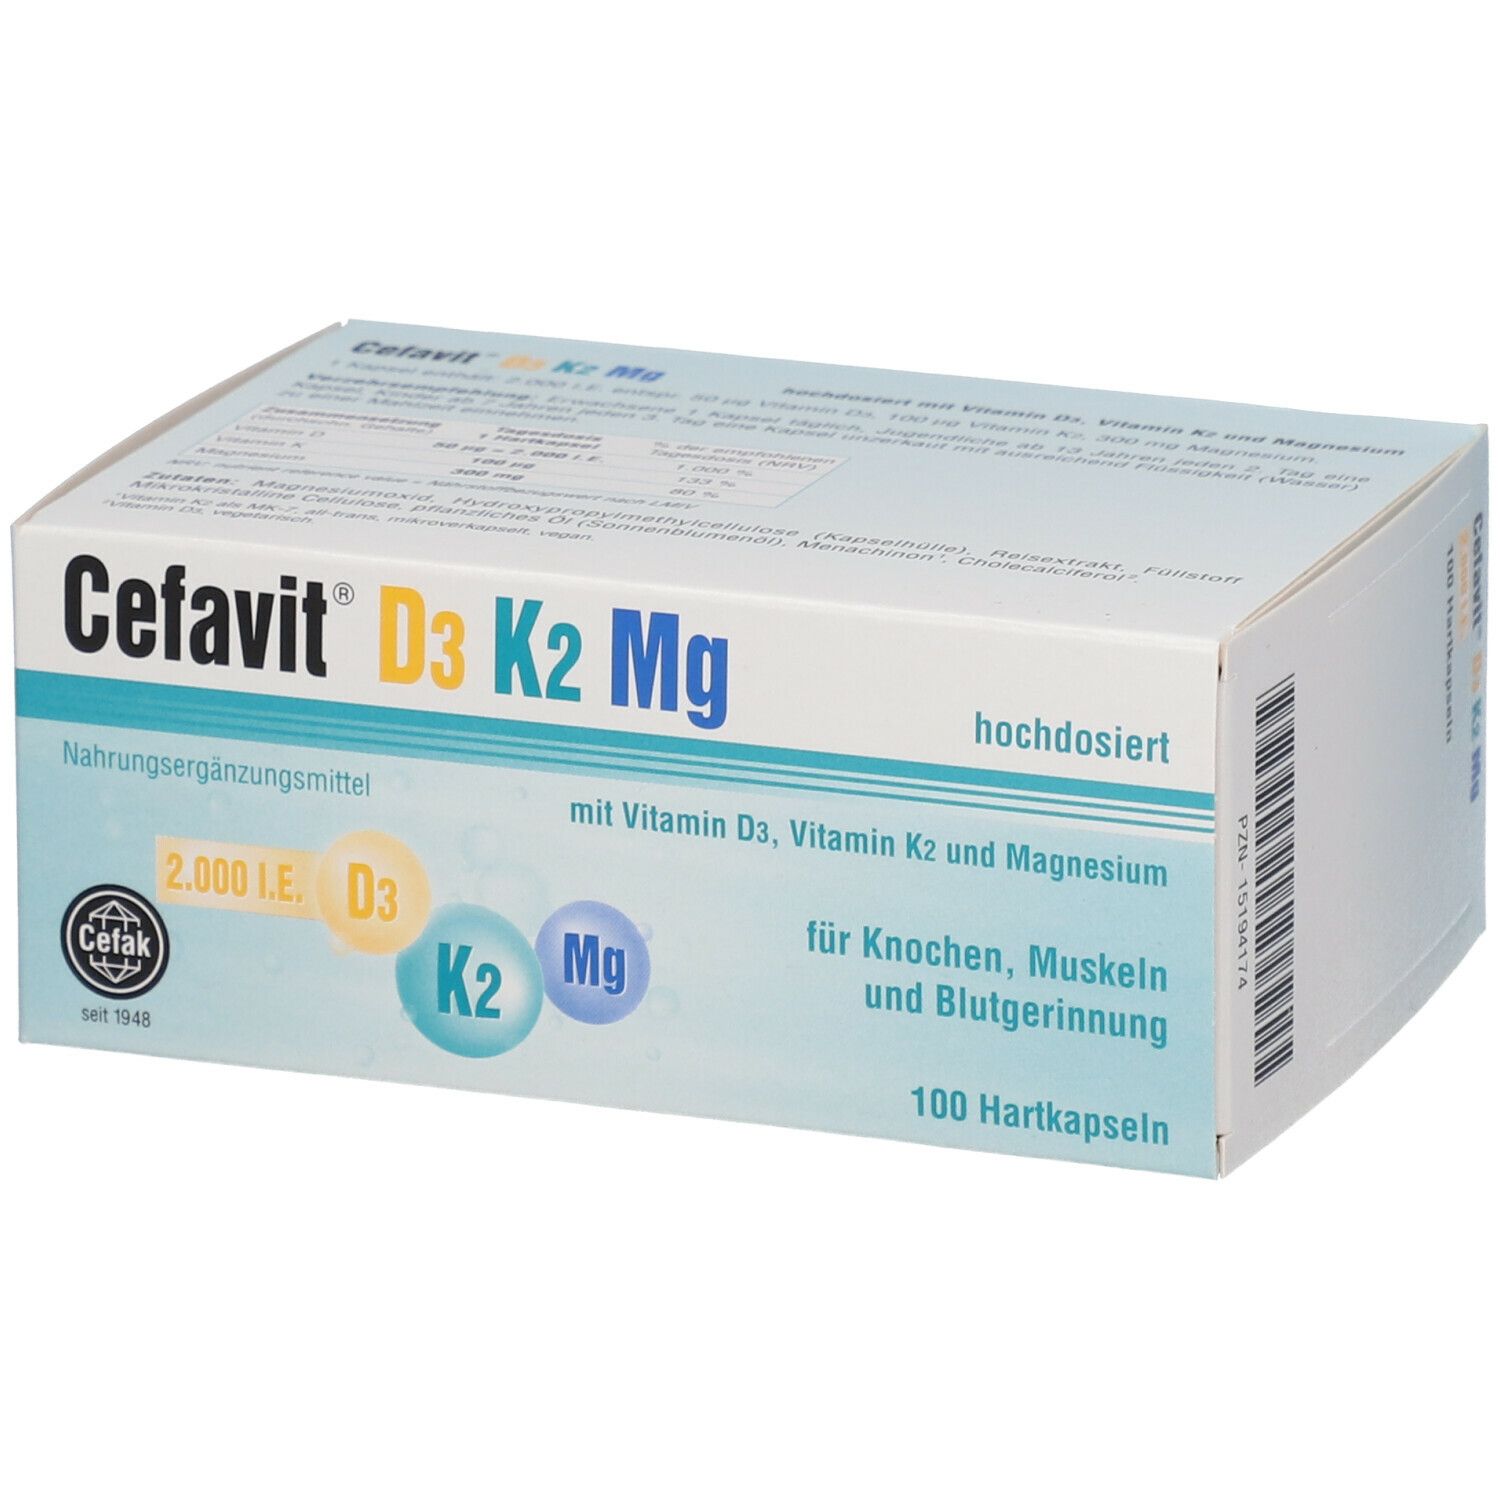 Cefavit® D3 K2 Mg